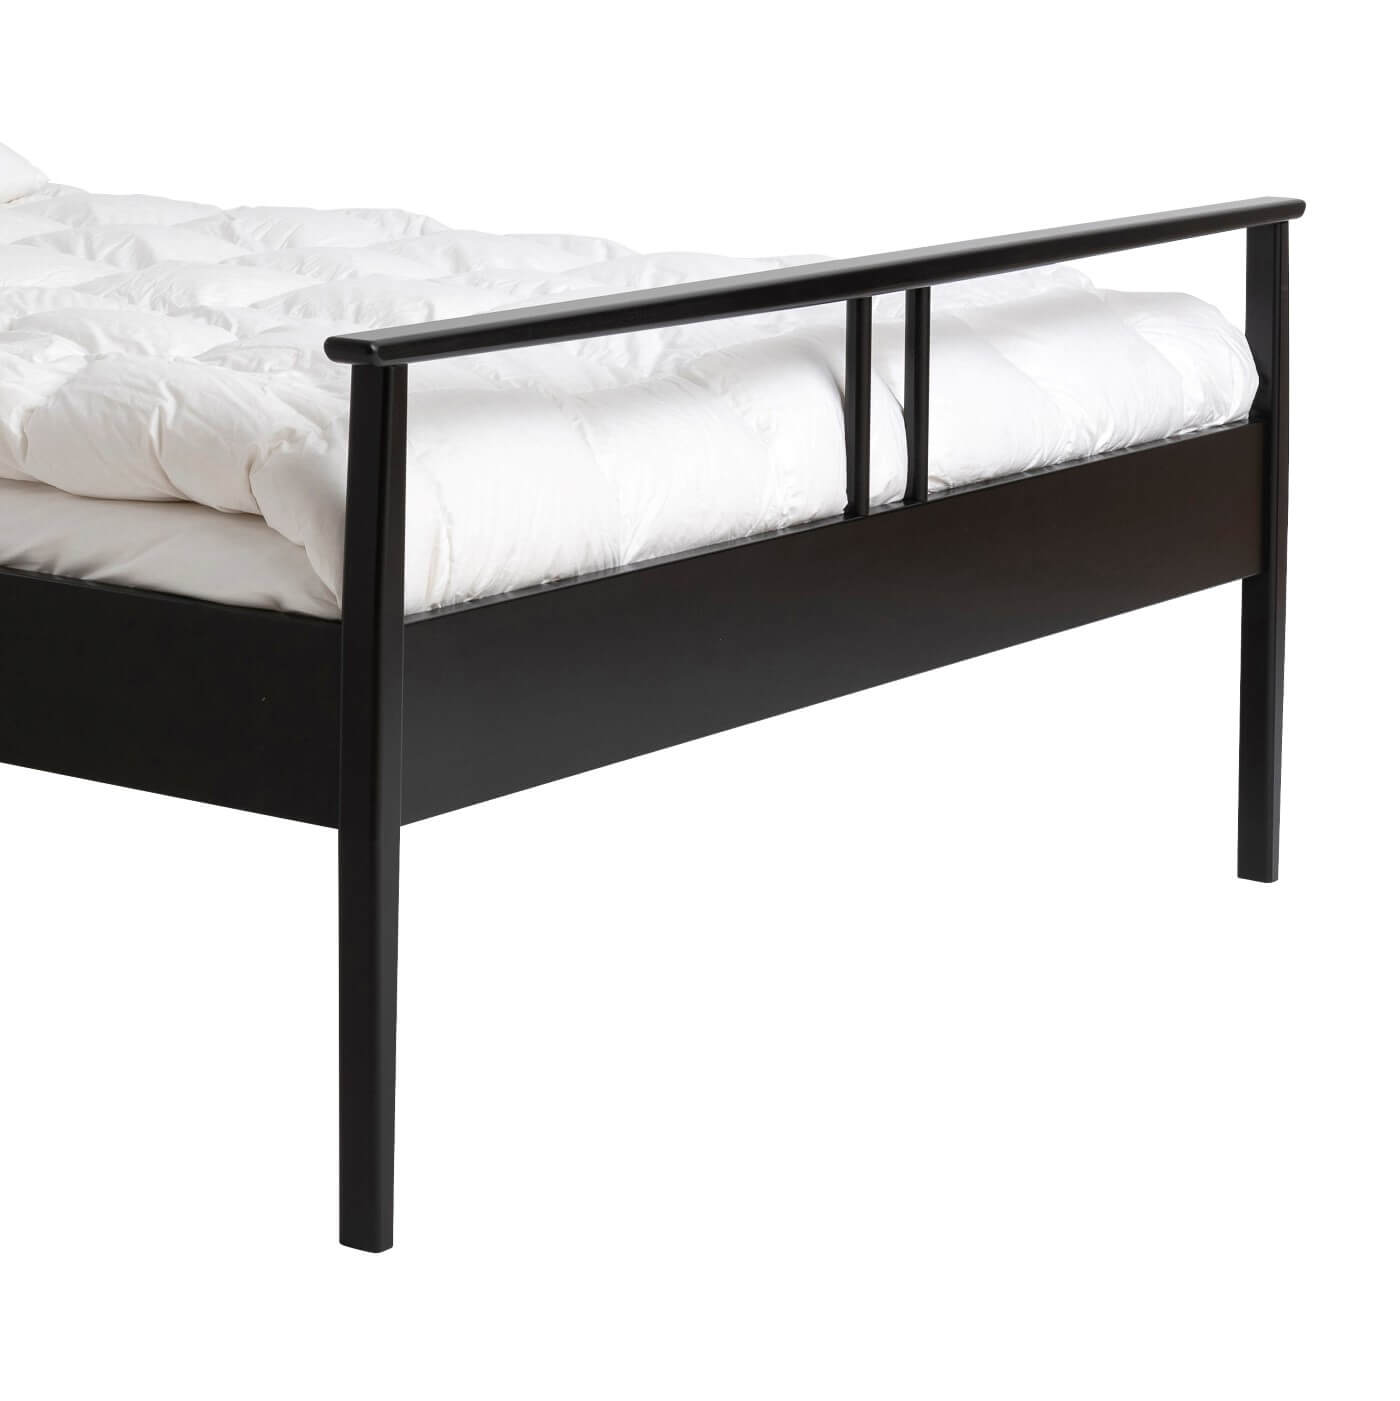 Czarne łóżko drewniane nowoczesne NOEL 160x200. Przybliżony widok na piękne wysokie nóżki łóżka z drewna brzozy skandynawskiej lakierowanej na kolor czarny